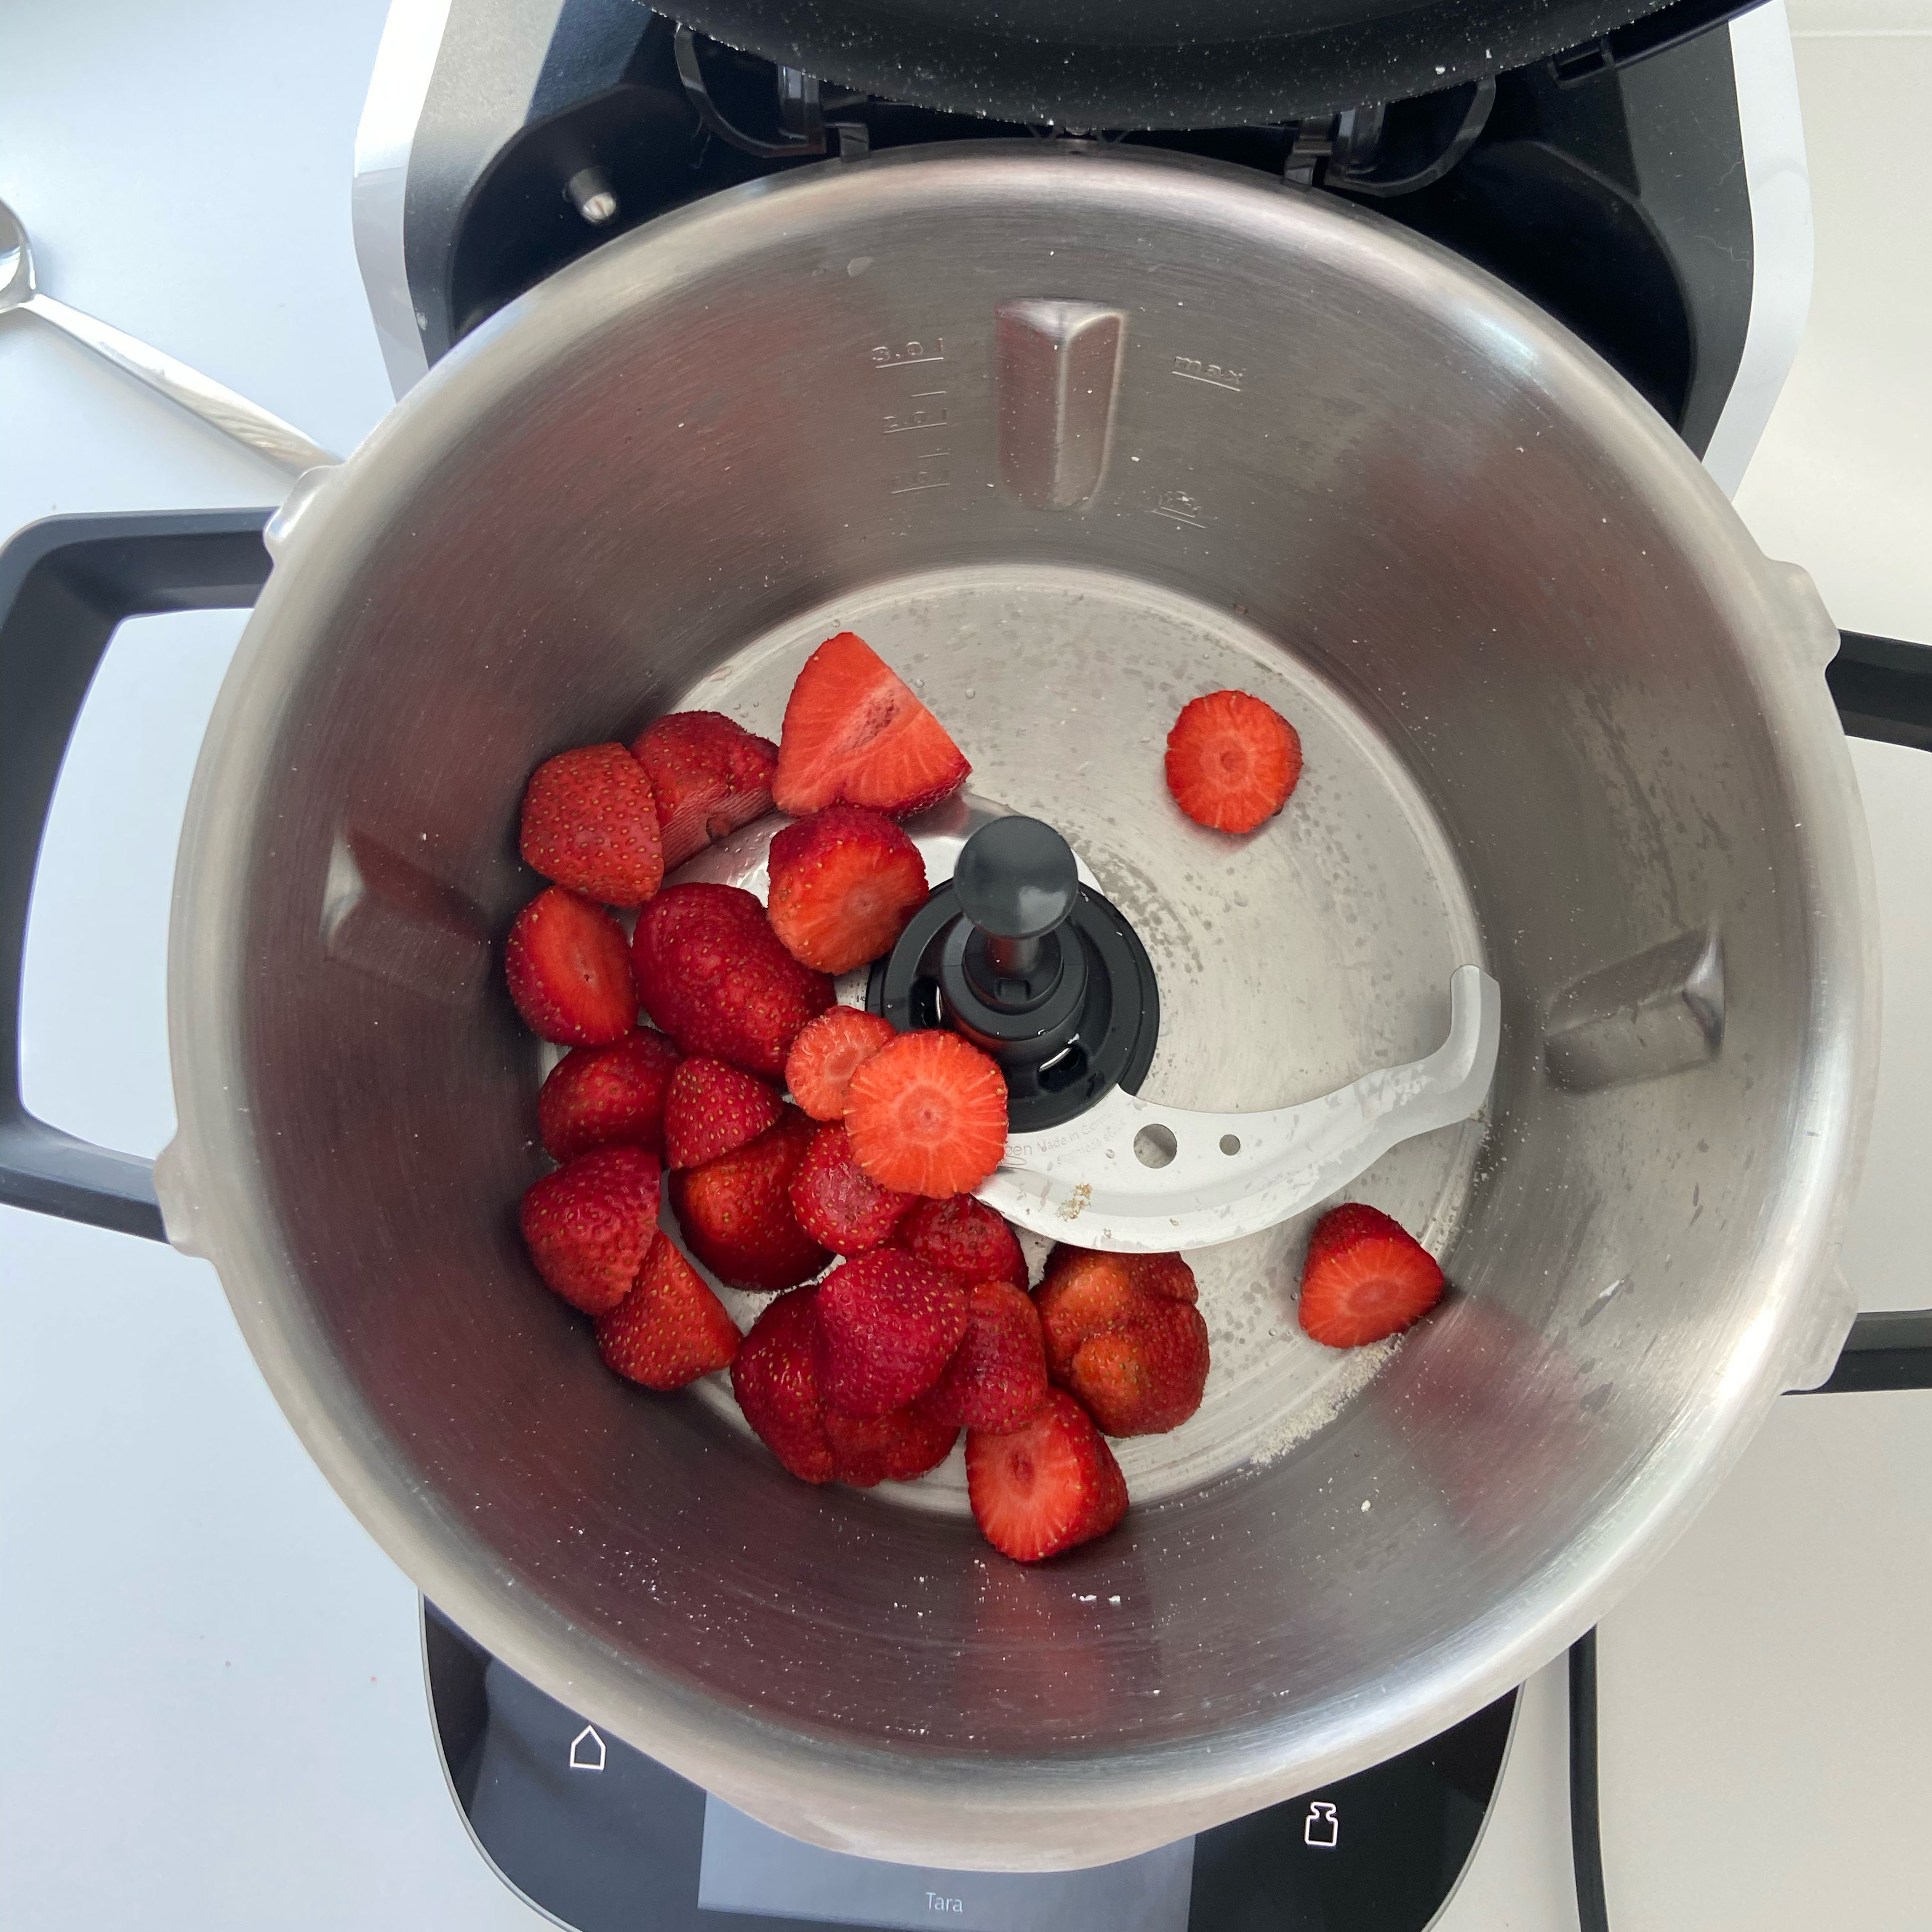 Den Topf auswaschen und das Universalmesser einsetzen. Die Erdbeeren dazugeben, den Deckel schließen, den Messerbecher einsetzen und für 1 Min. pürieren (Universalmesser | Stufe 14 | 1 Min.).